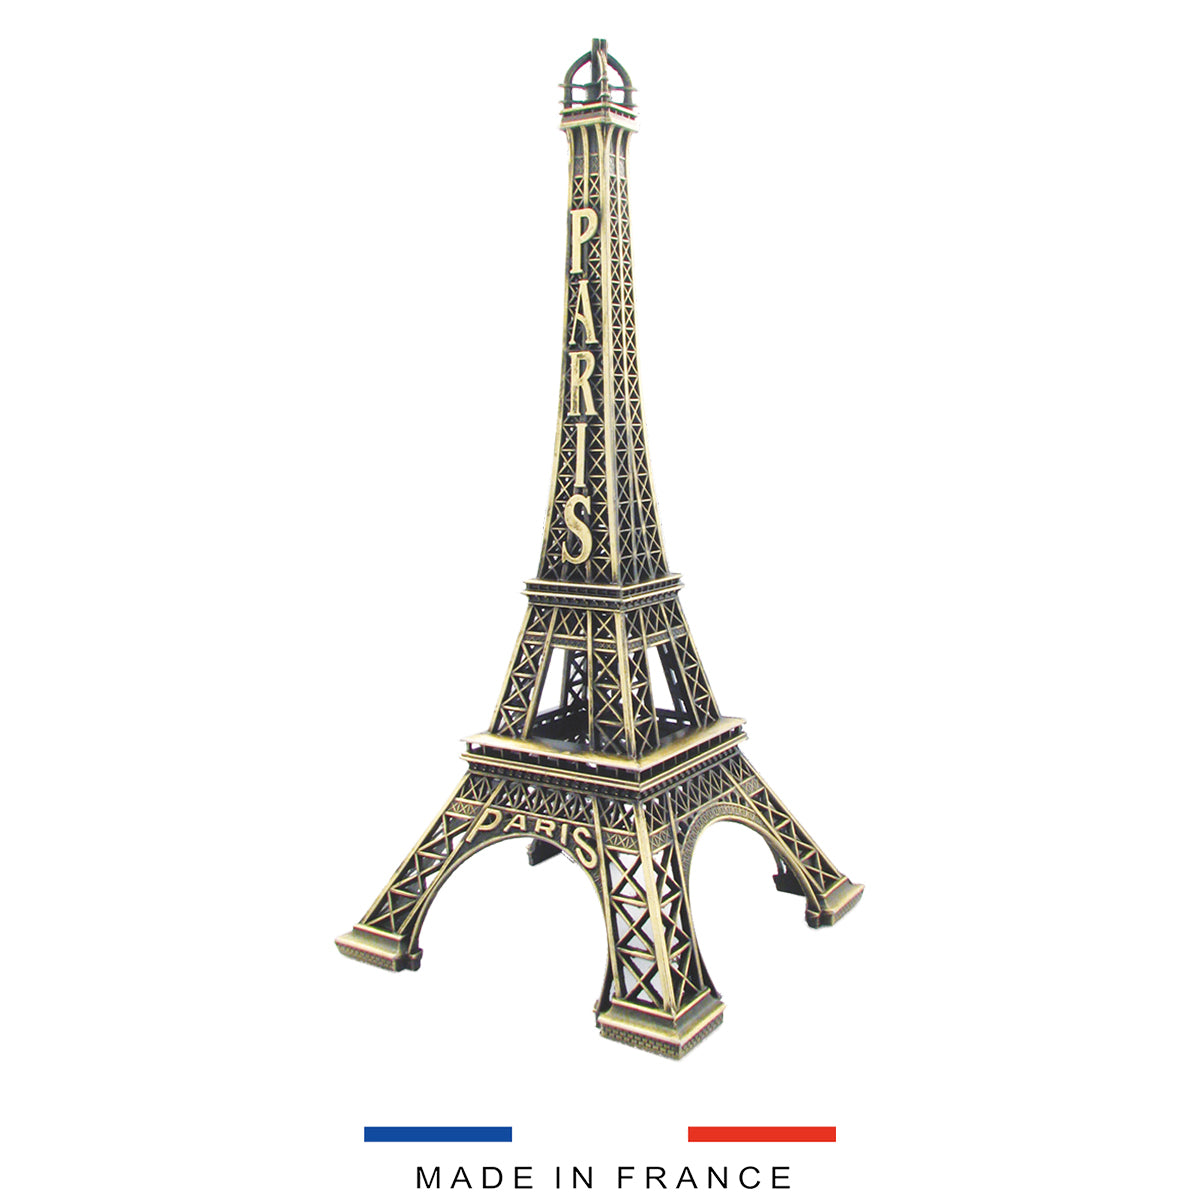 Monuments de Paris : des souvenirs authentiques et de qualité fabriqués en France dans notre atelier